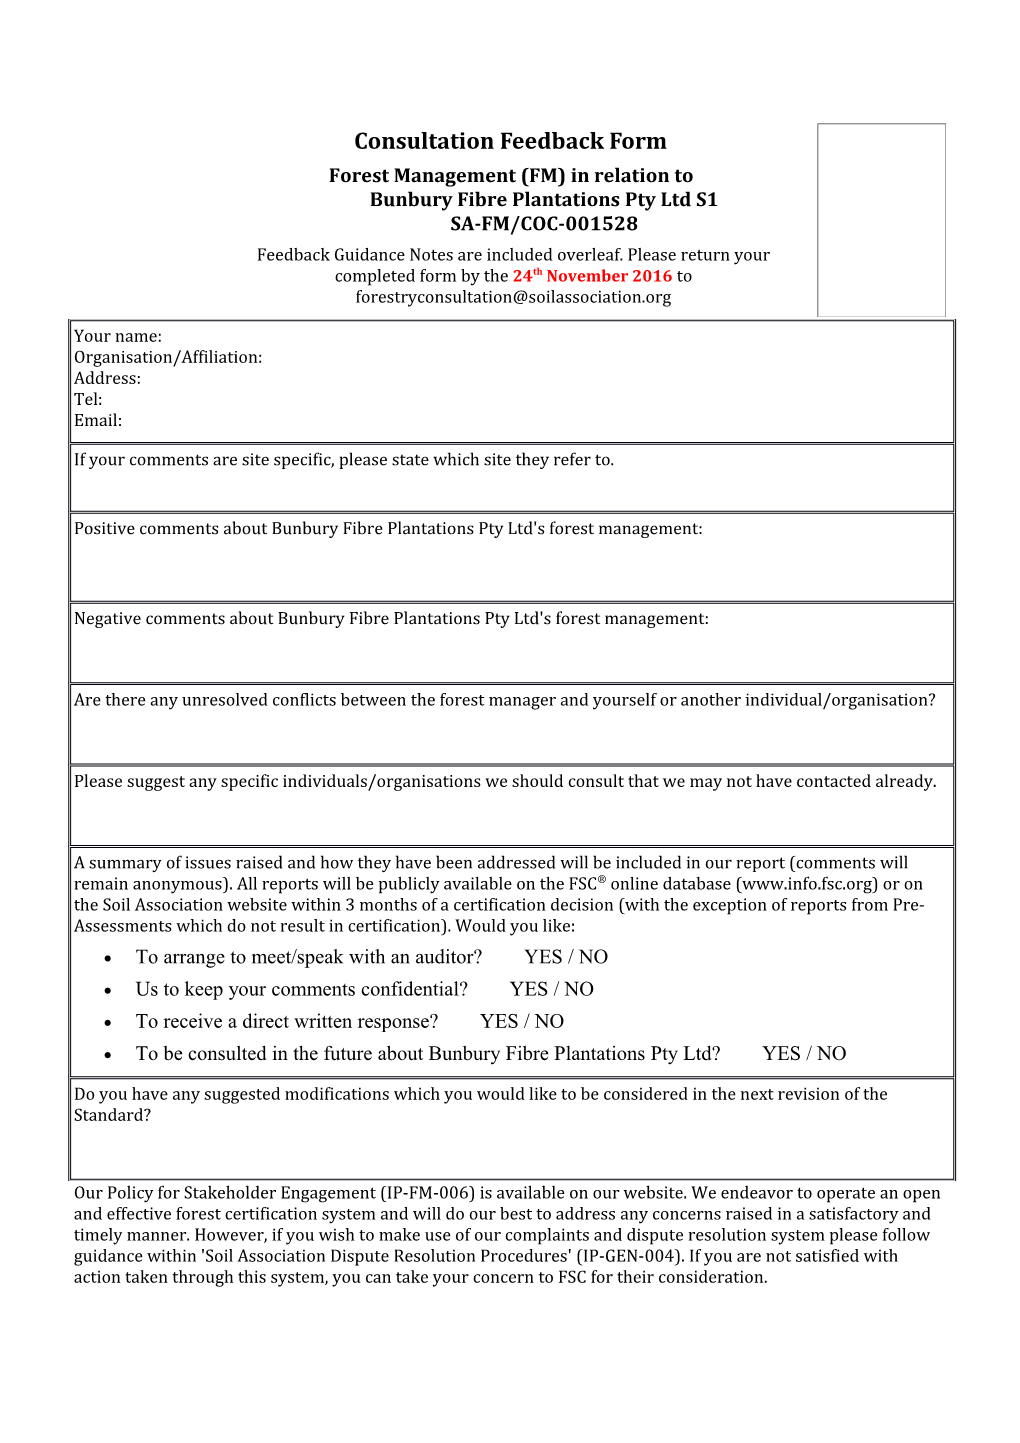 Forest Management (FM) in Relation to Bunbury Fibre Plantations Pty Ltd S1SA-FM/COC-001528